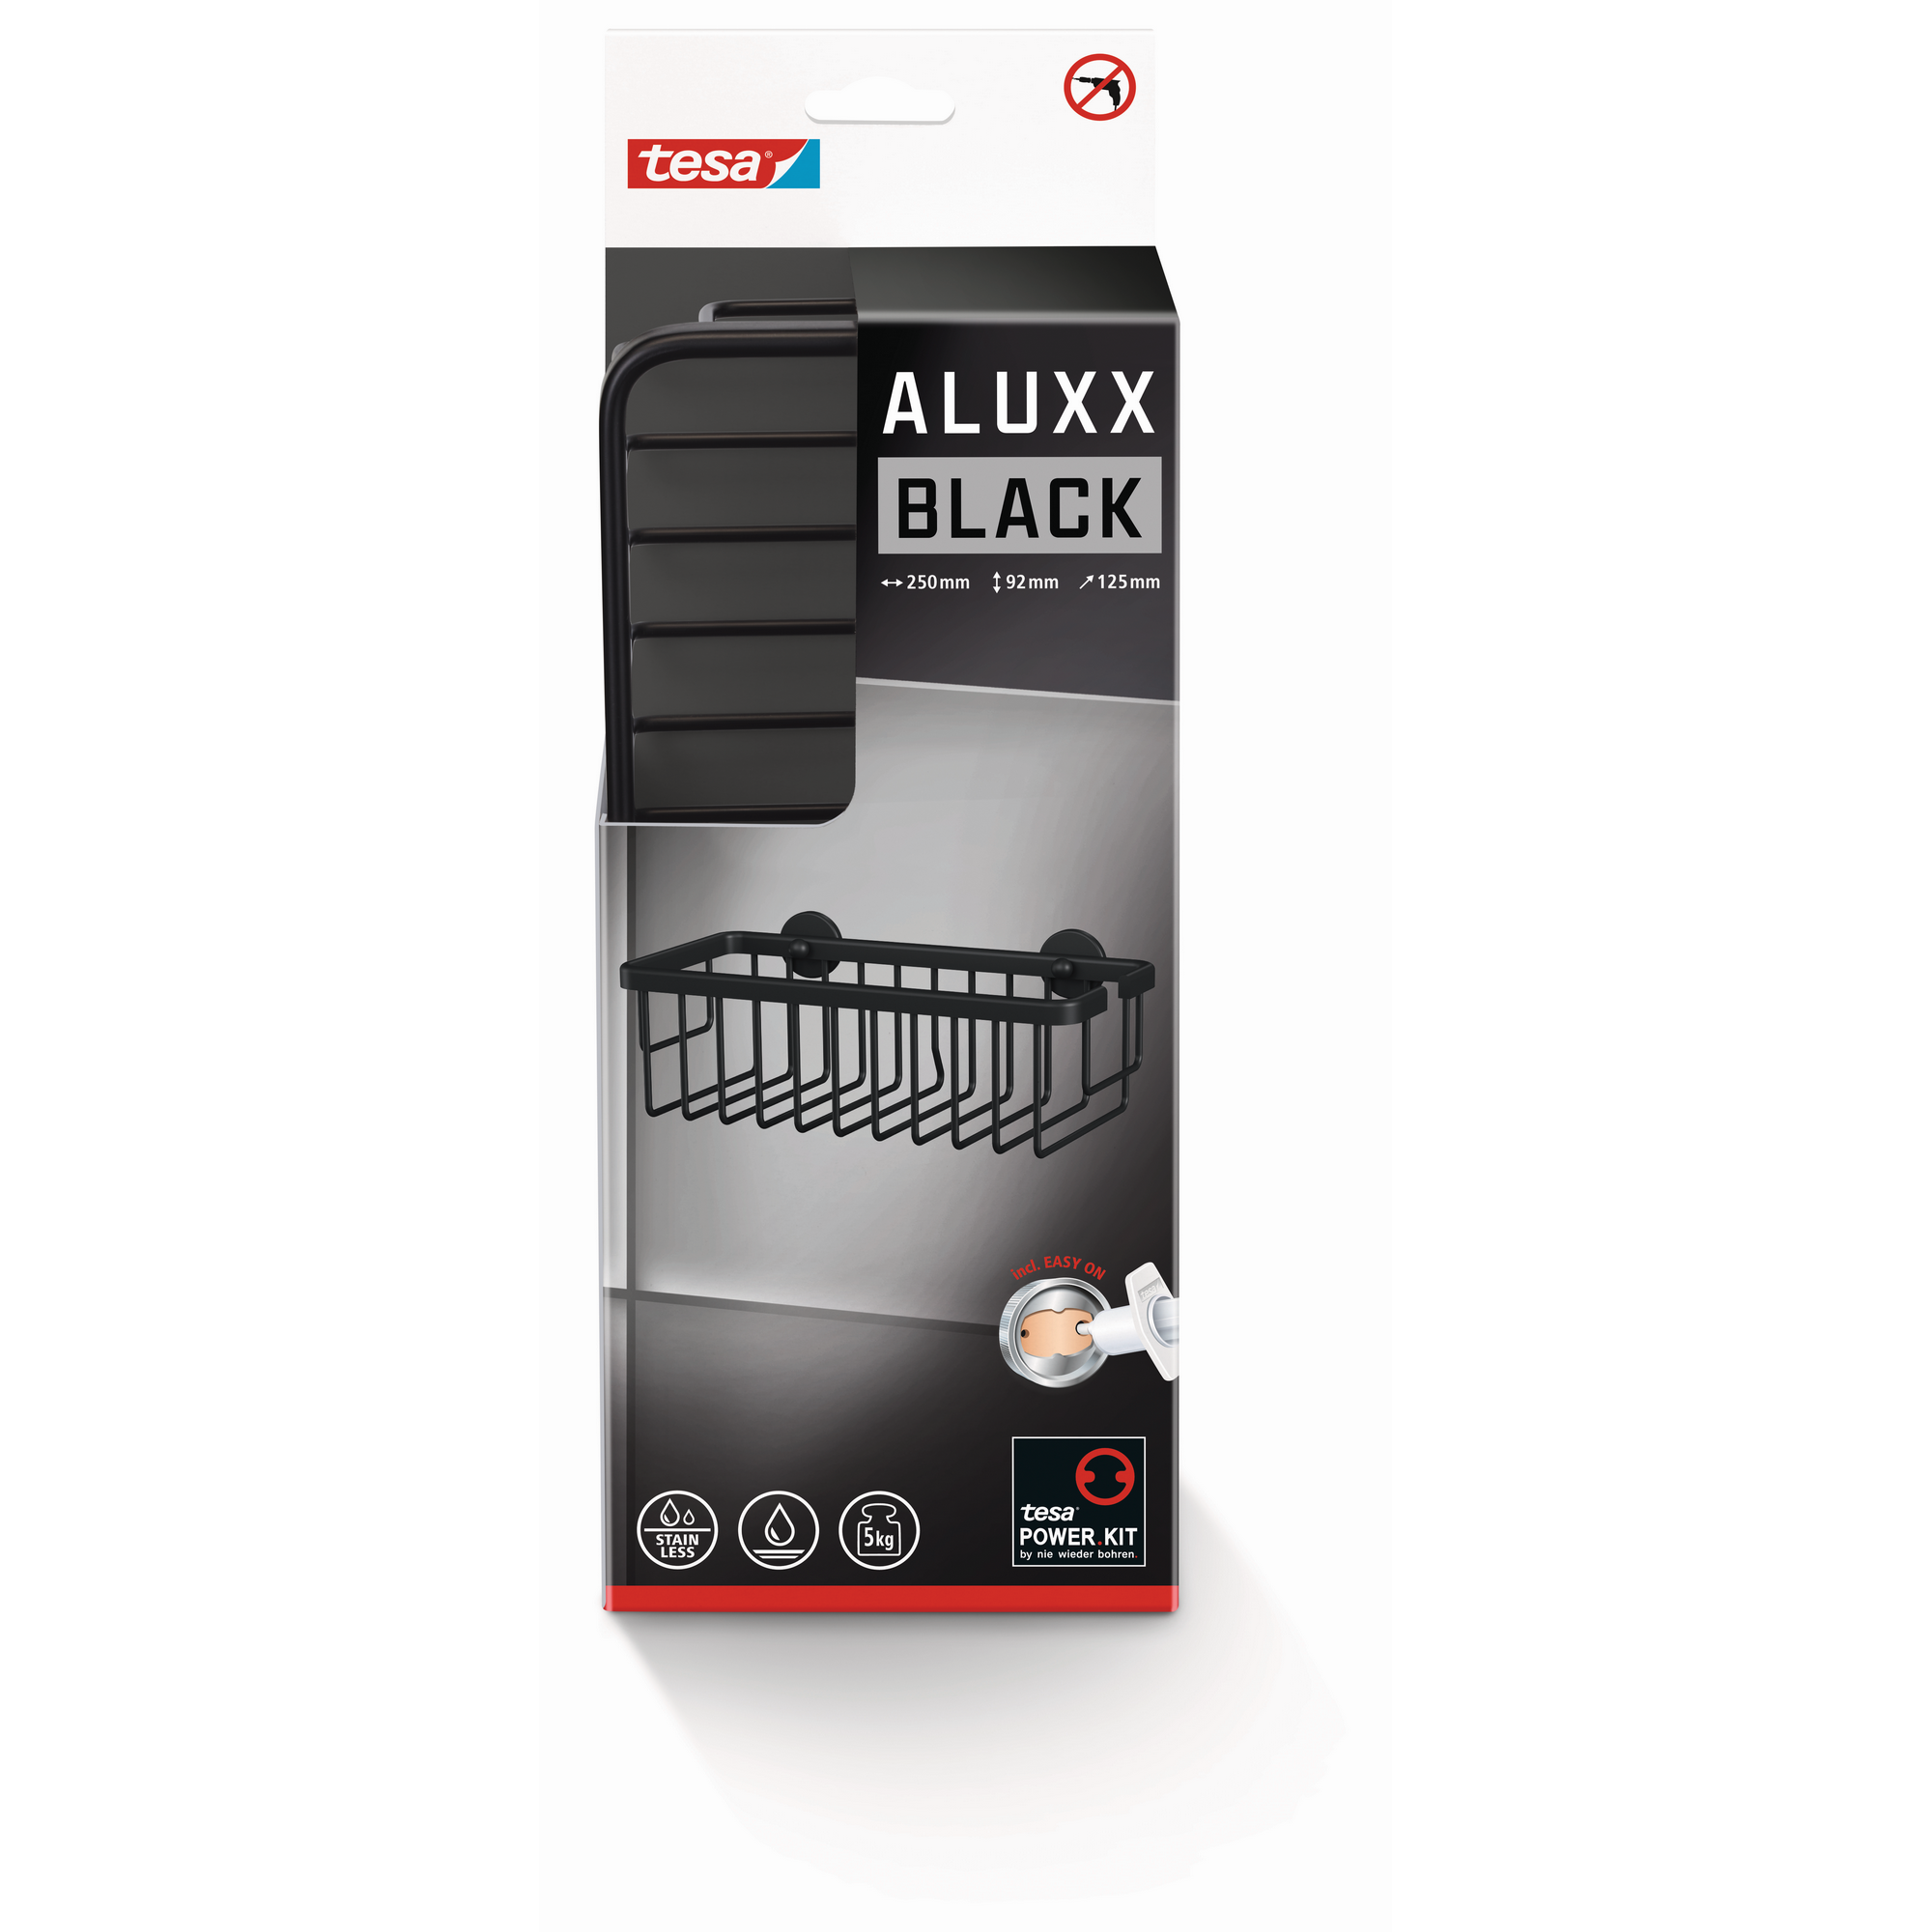 Duschkorb 'Aluxx Black' mattschwarz mit Klebelösung 25 x 9,2 x 12,5 cm + product picture